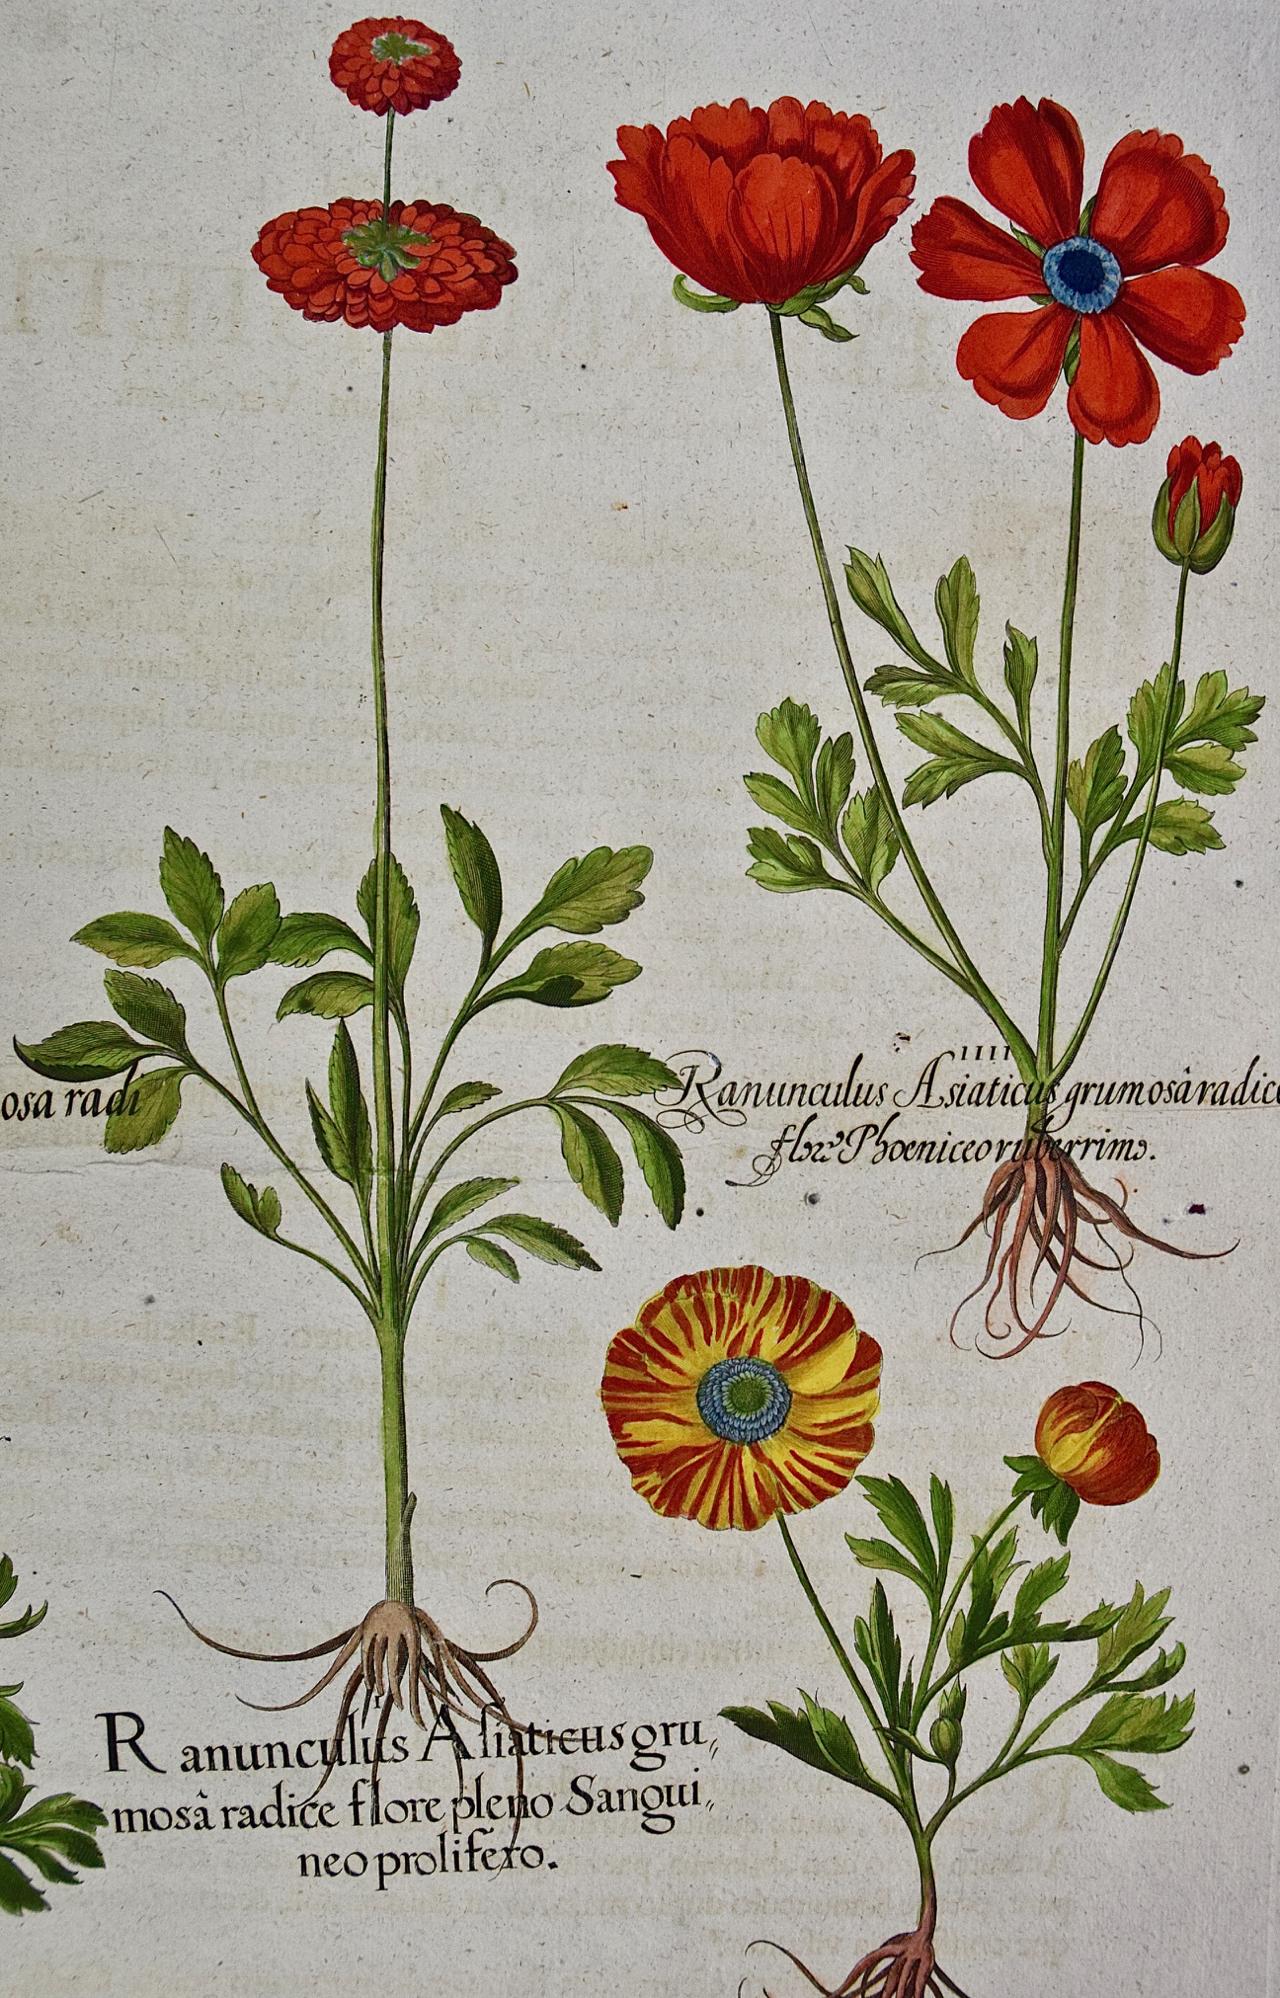 Schmetterlingsblumen: Ein handkolorierter botanischer Stich von Besler aus dem 18. Jahrhundert (Akademisch), Print, von Basilius Besler